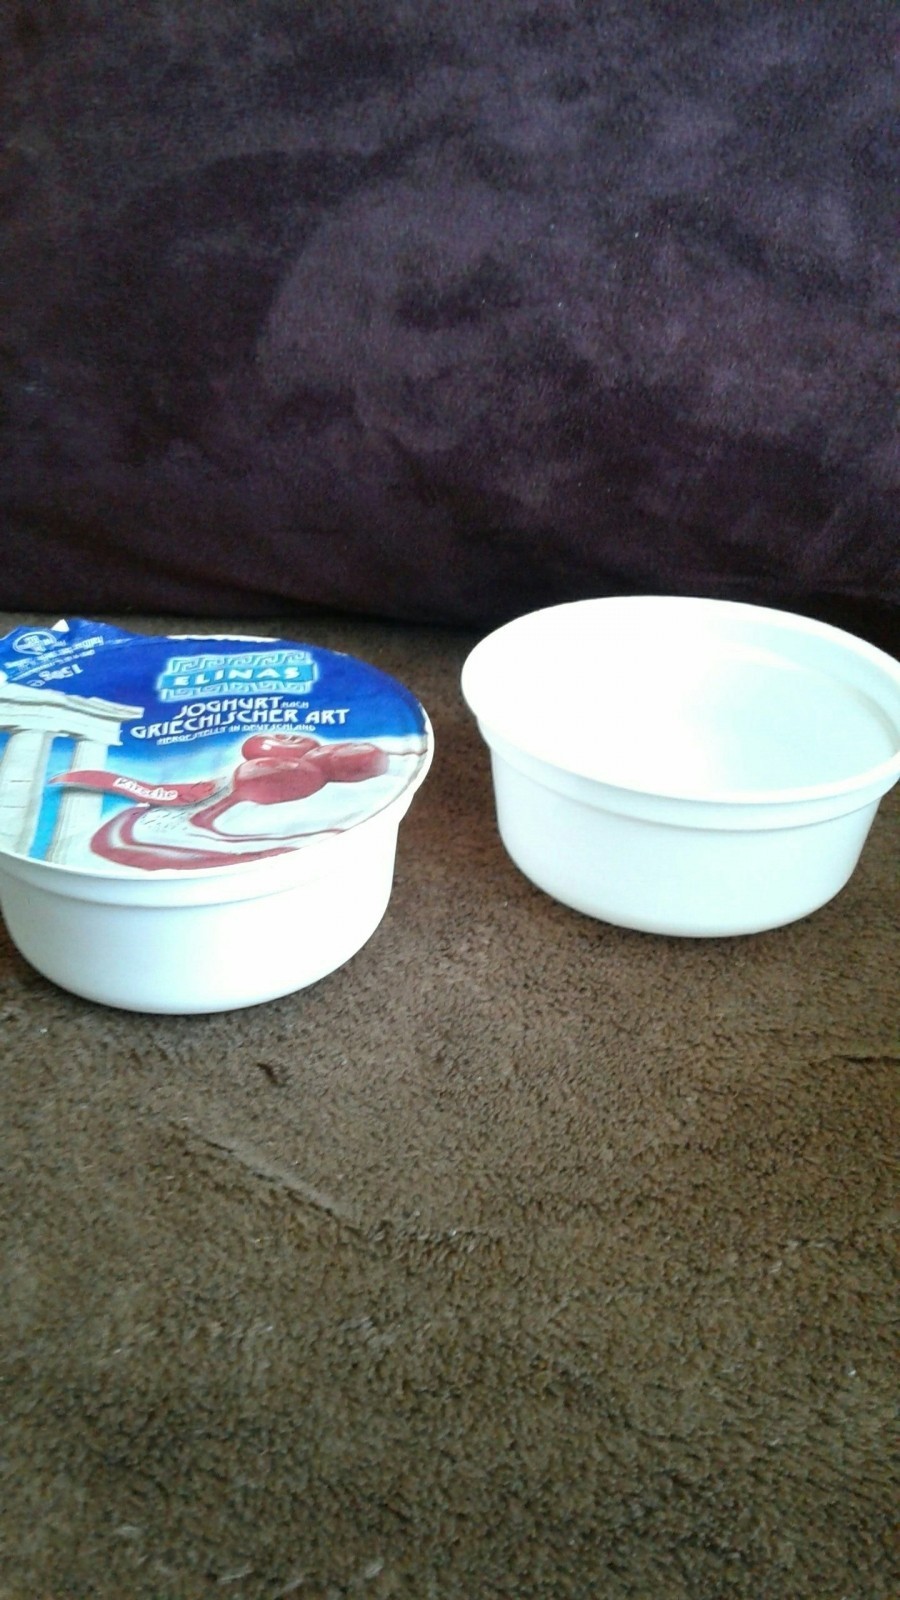 Wir sammelten Joghurtbecher vom Joghurt nach griechischer Art. Daraus bastelten wir Osterkörbchen, die man nach Belieben füllen kann.